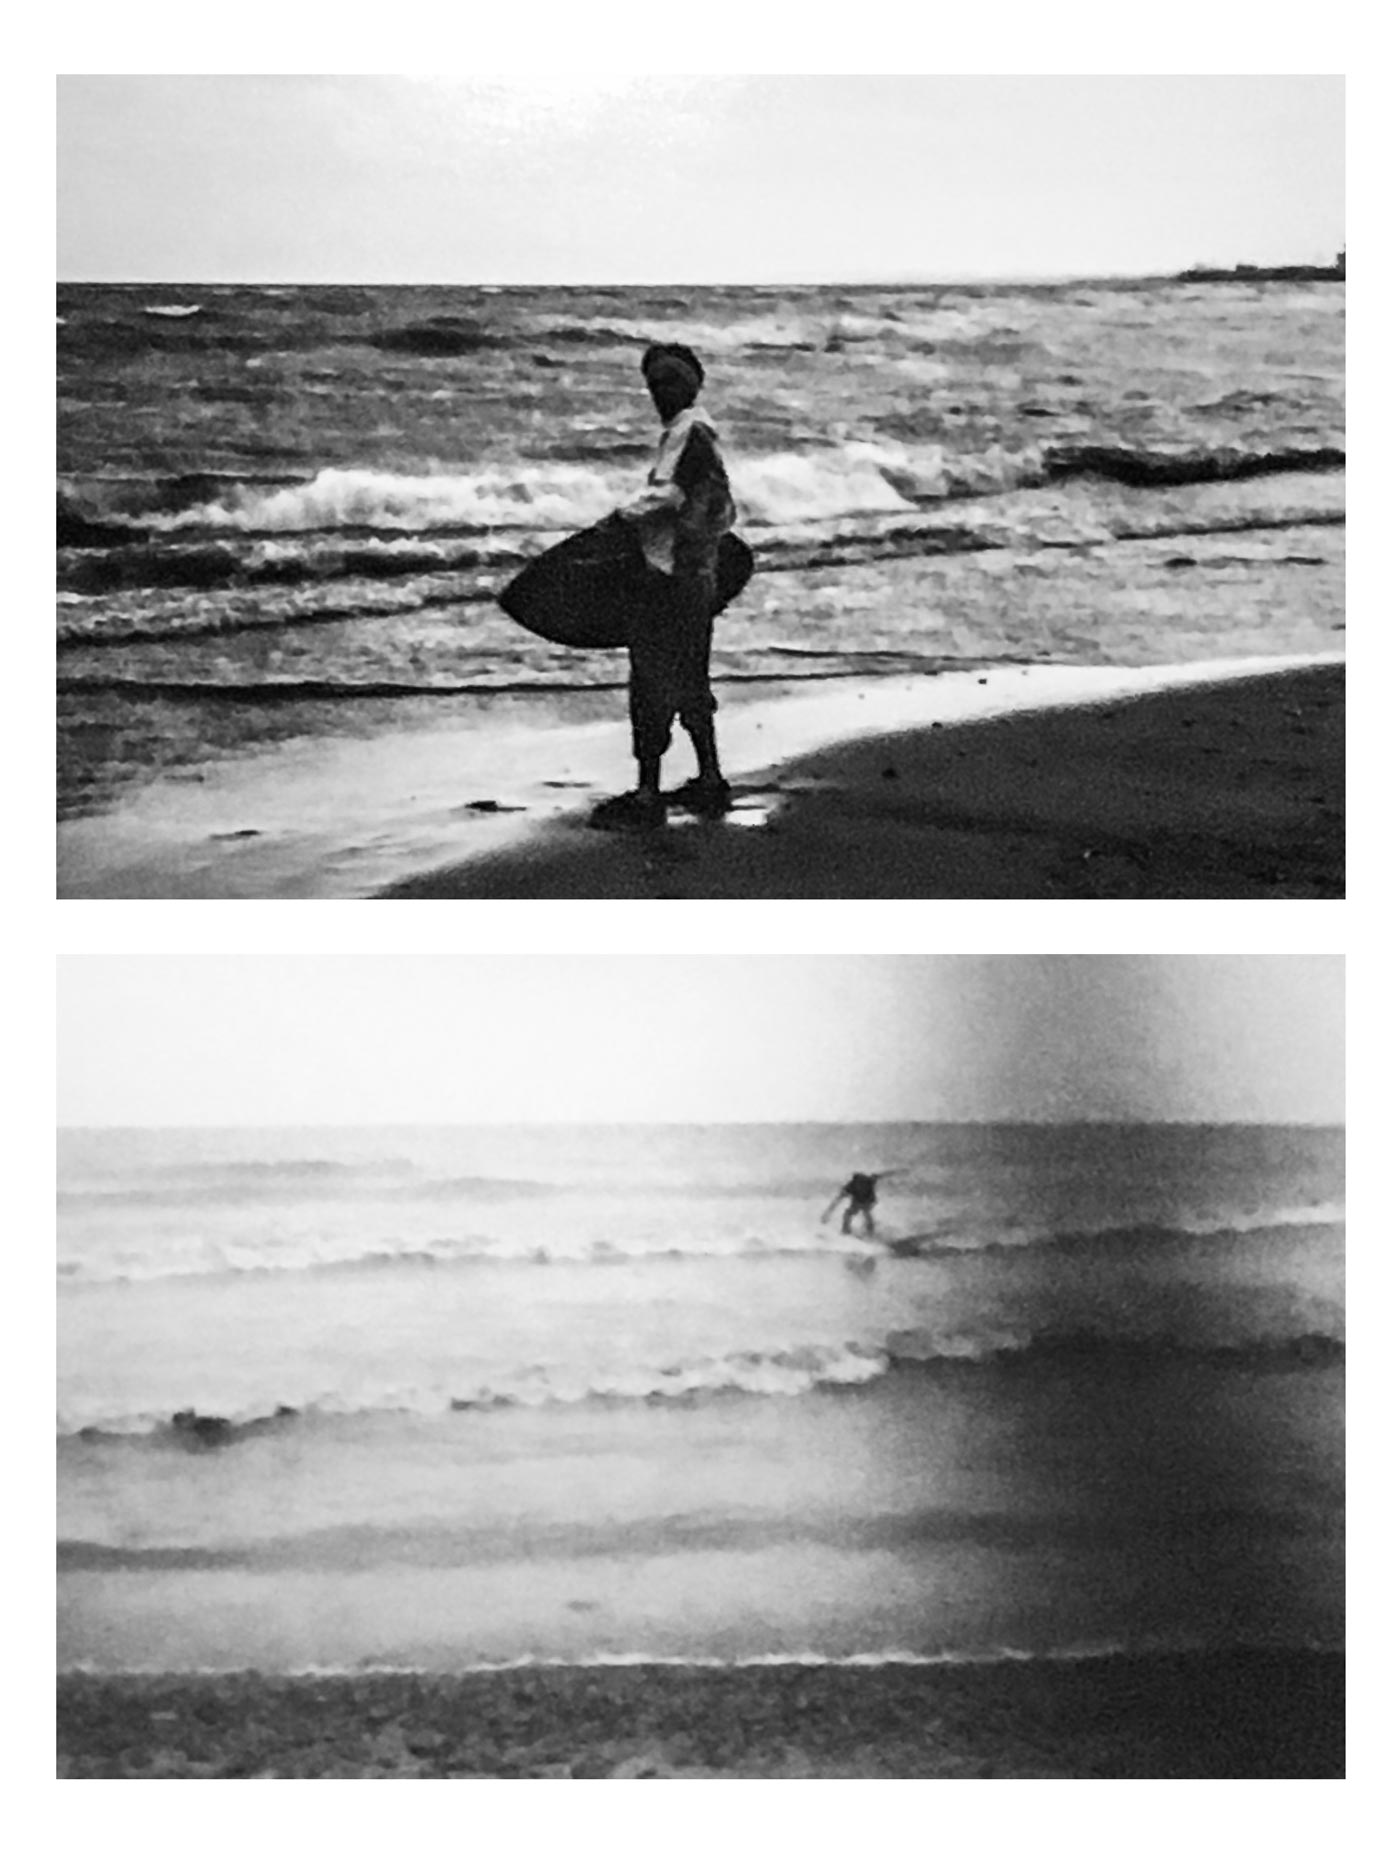 Brad Van Rooi Surfing Great Lakes 1986